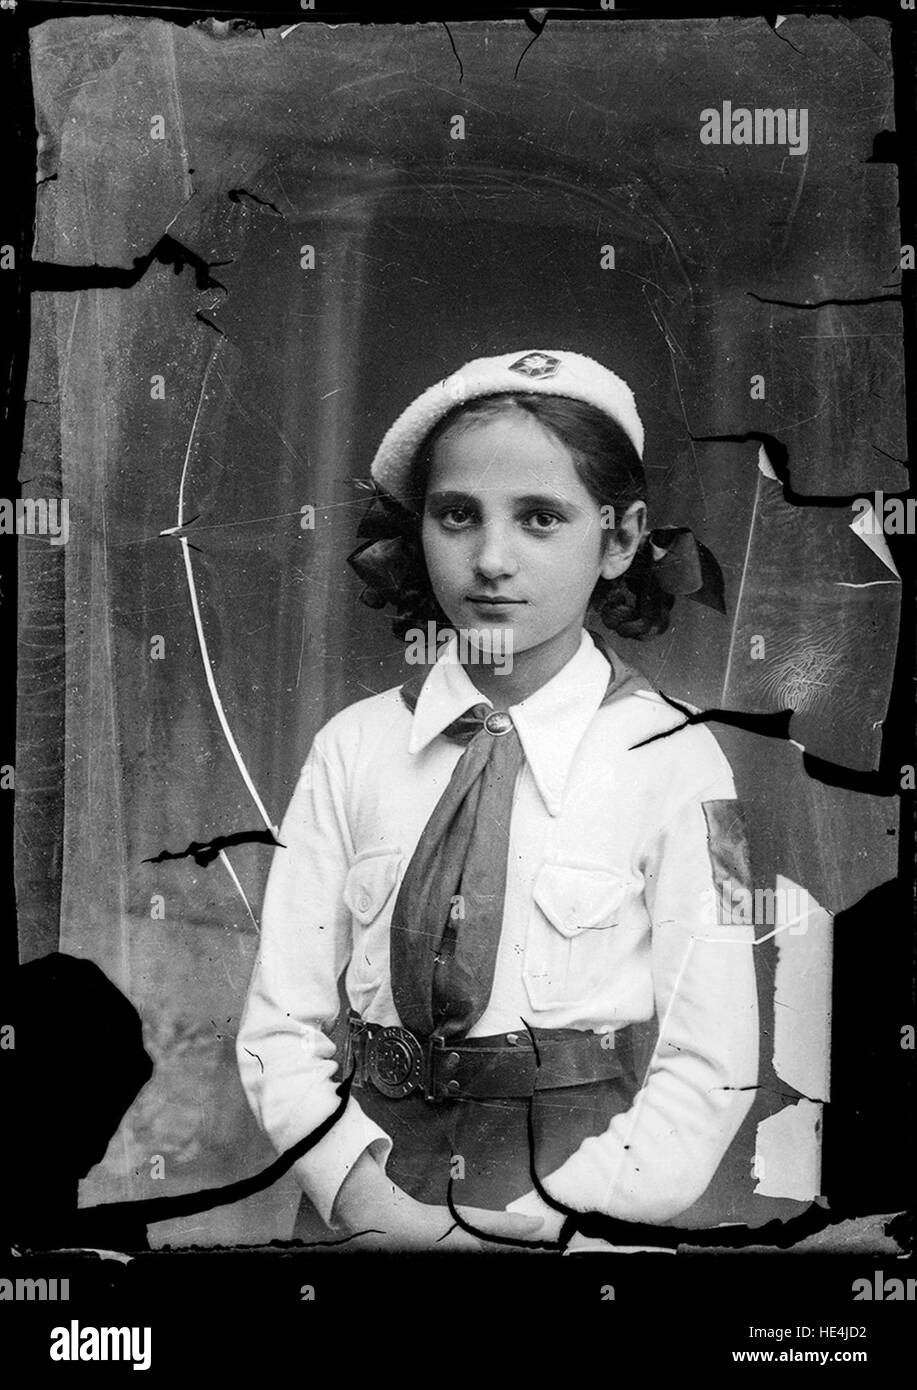 Girl wearing a Pioneer uniform en.wikipedia.org/wiki/Pioneer Organization ( http://en.wikipedia.org/wiki/Pioneer Organization ) Stock Photo